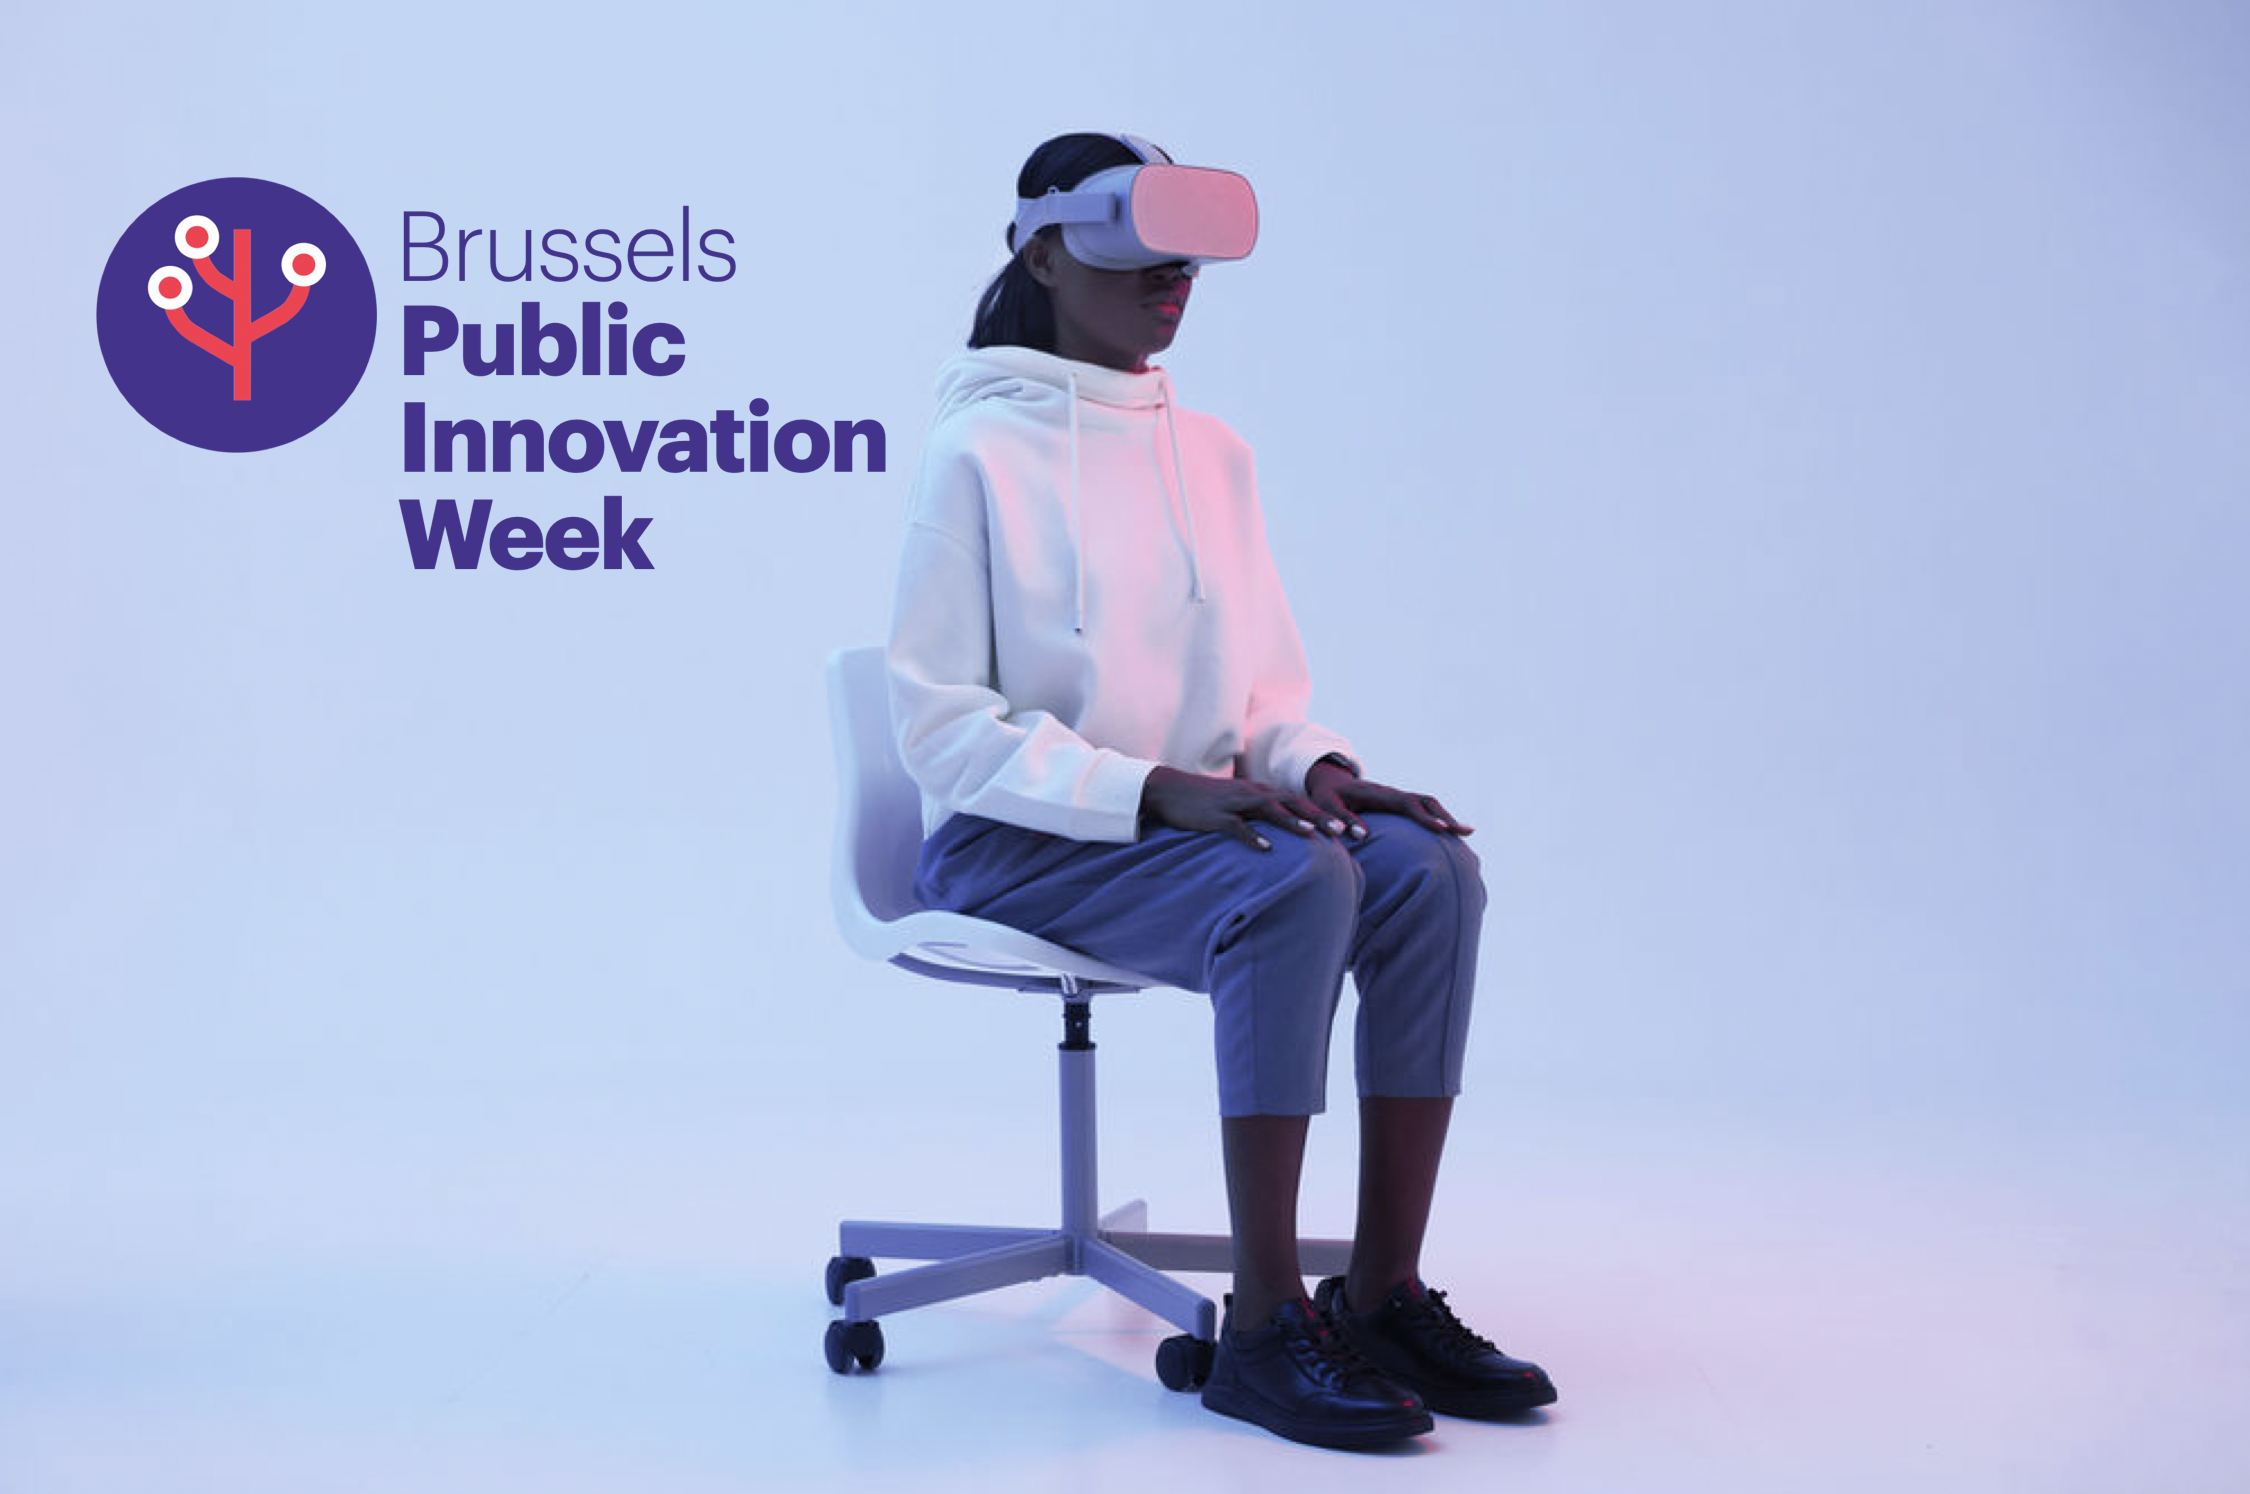 Brussels Public Innovation Week